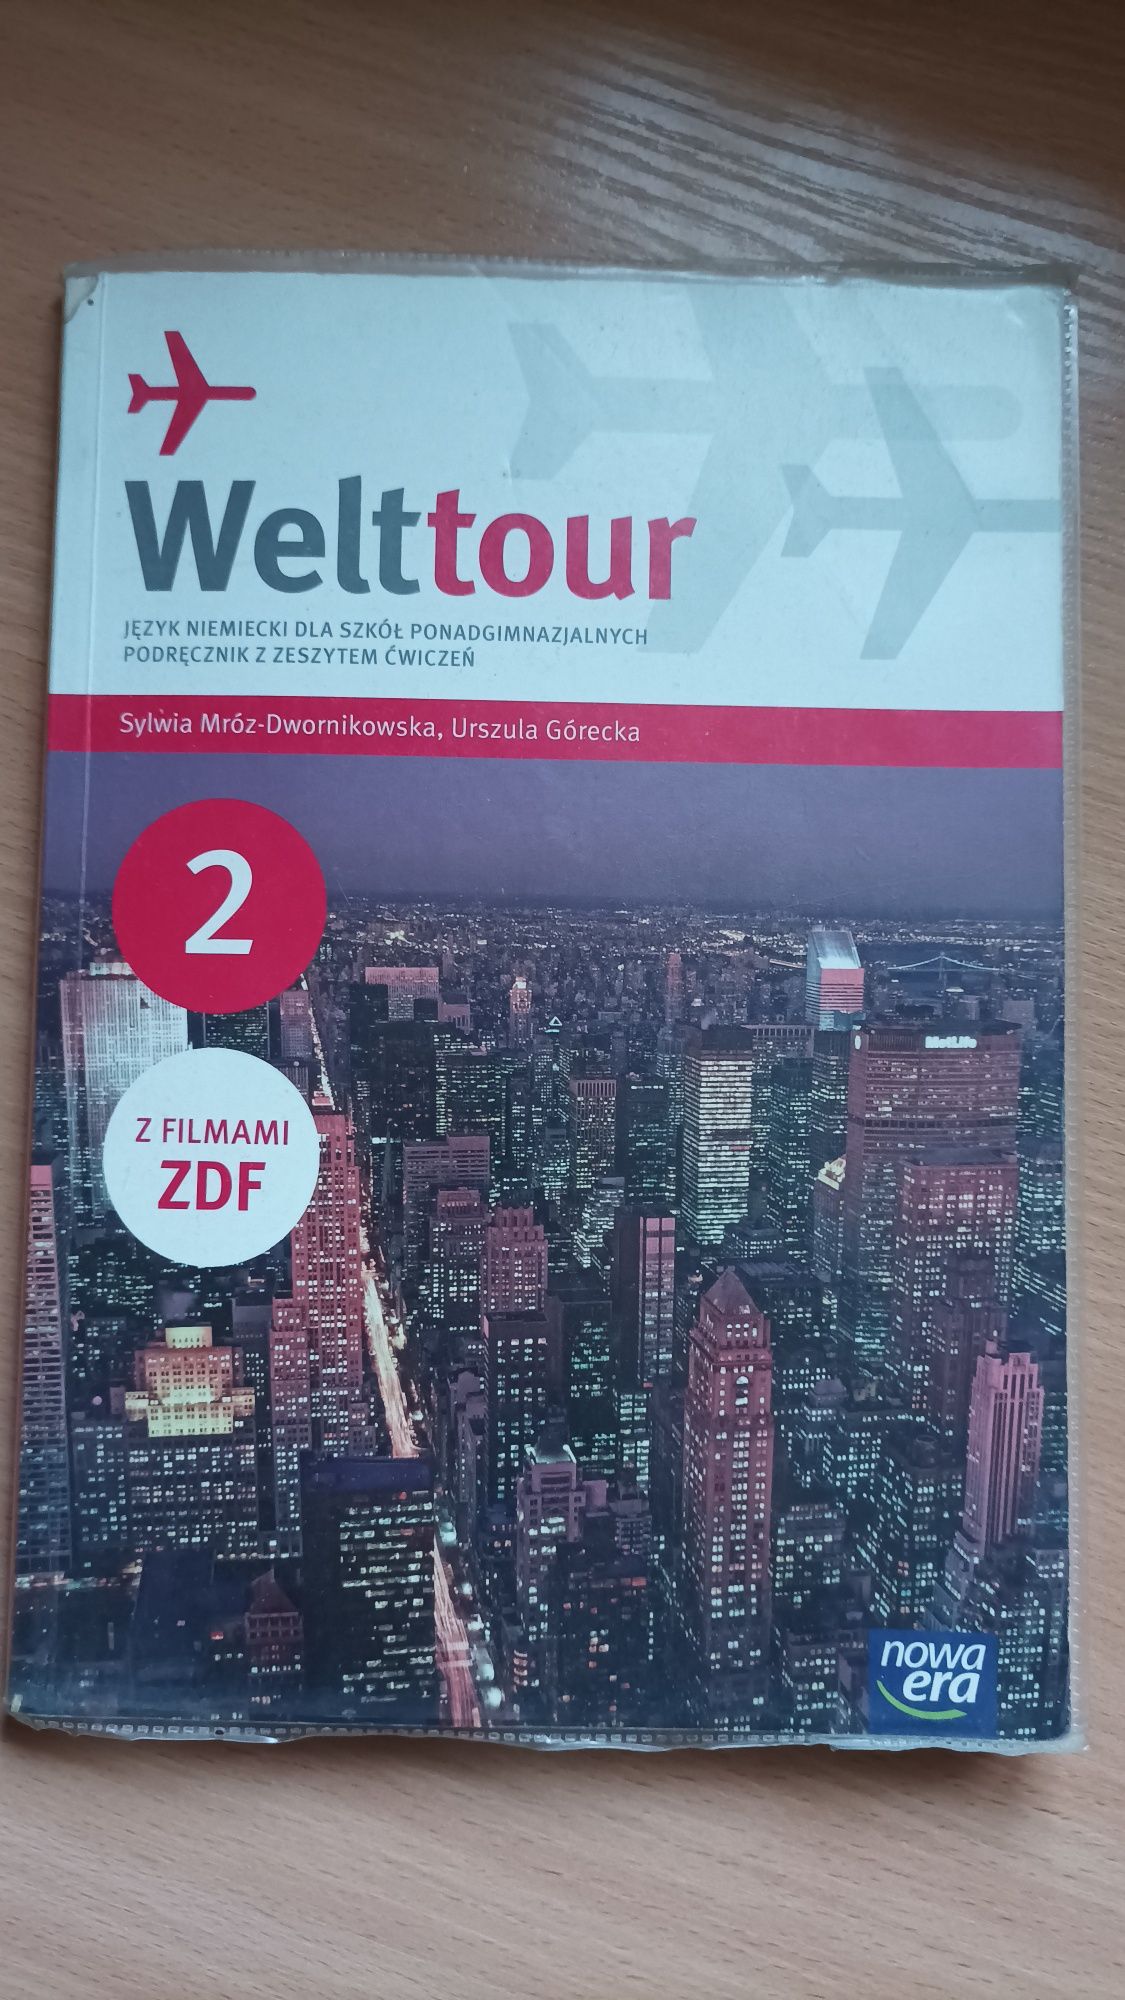 Welttour podręcznik z zeszytem ćwiczeń